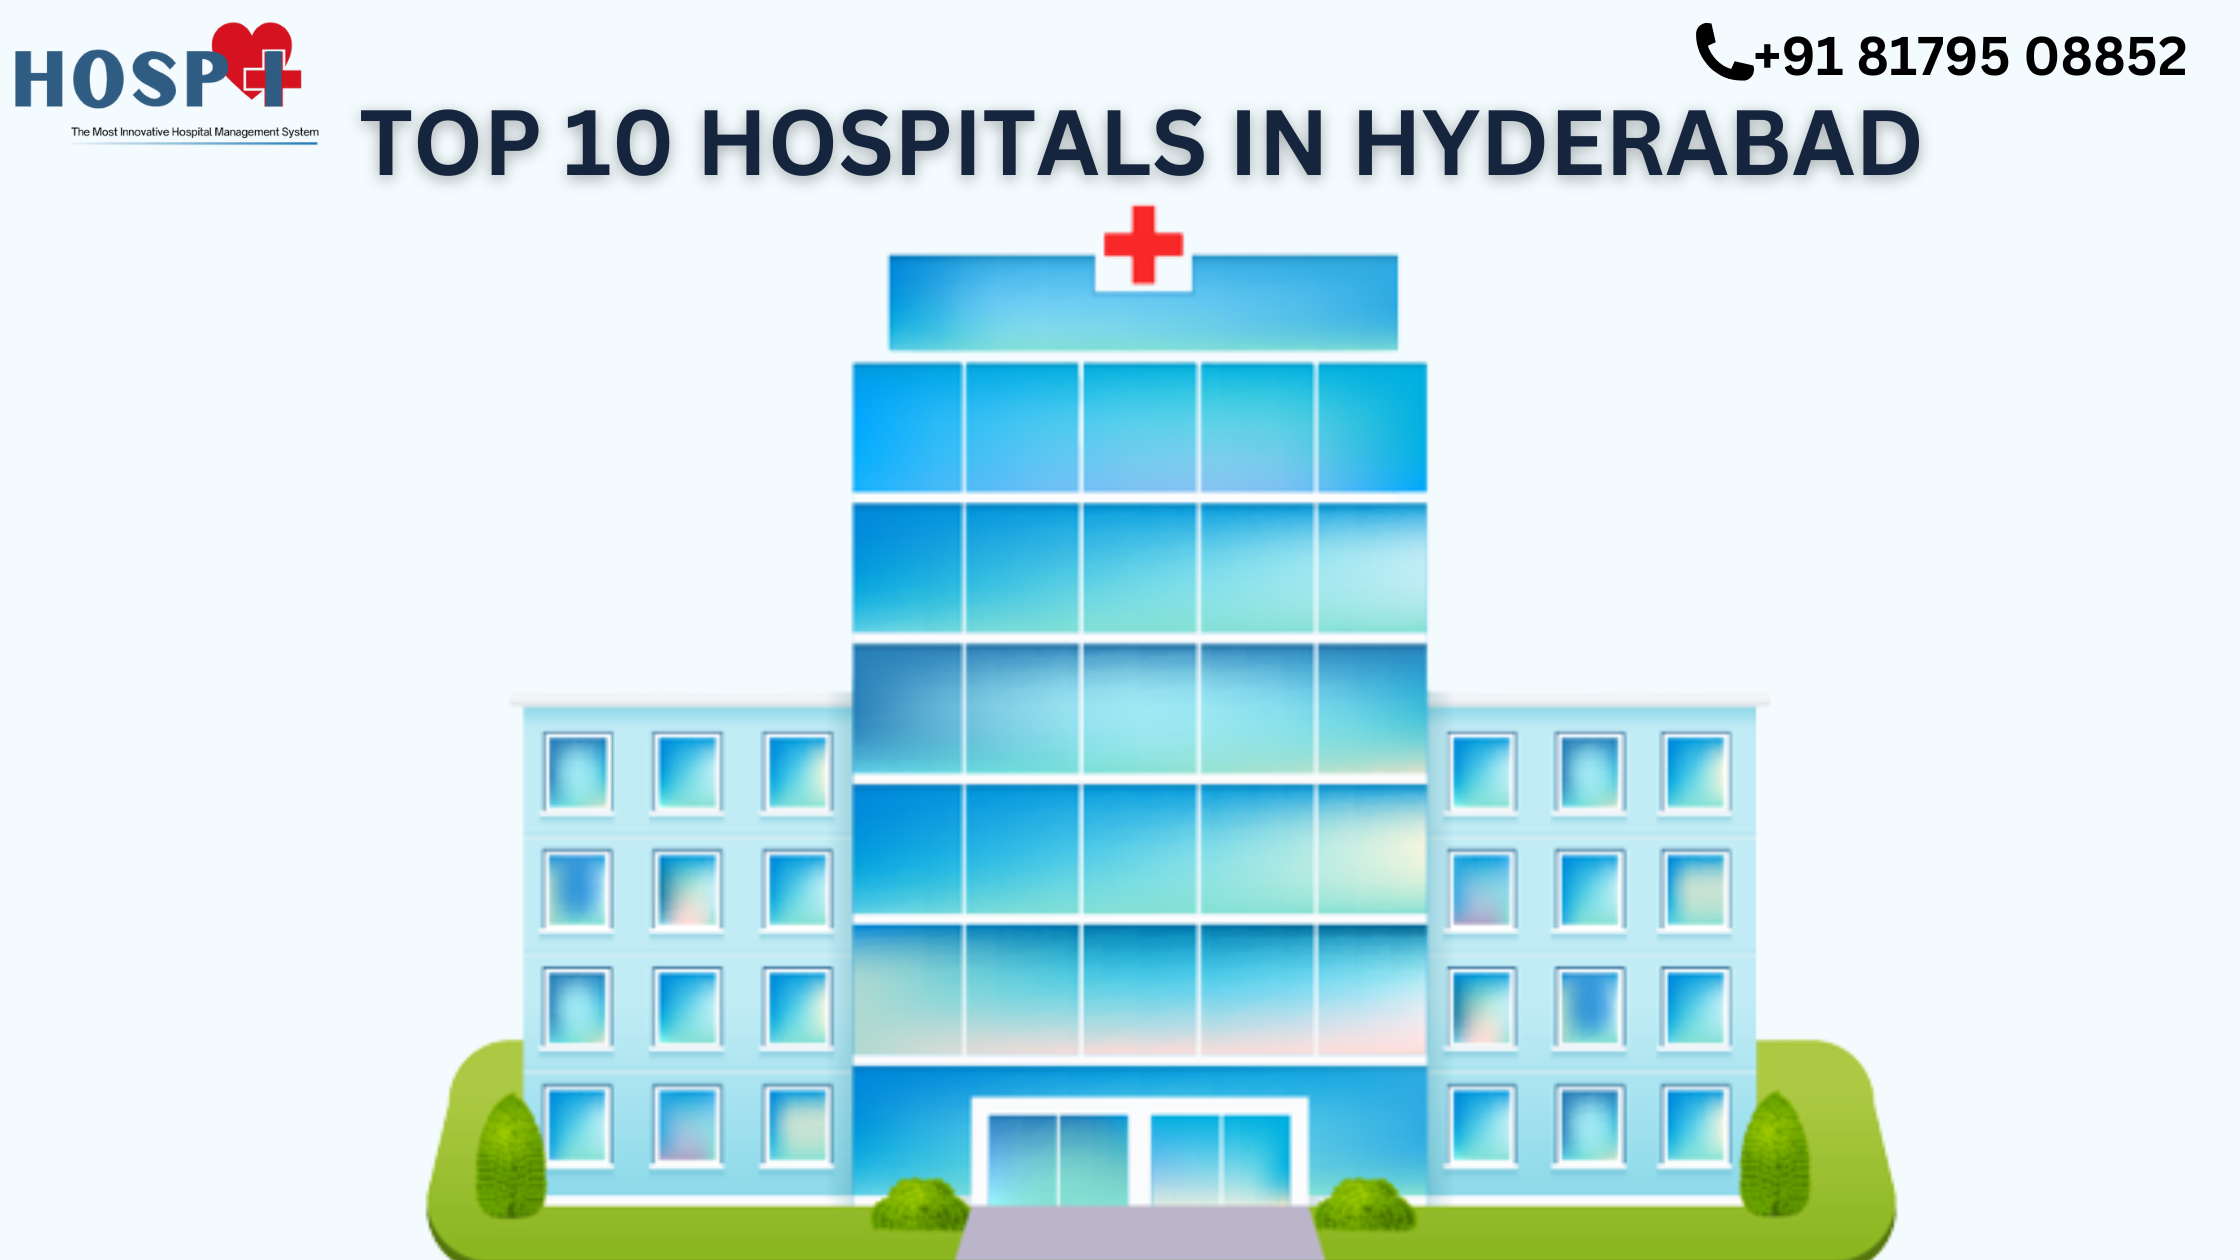 Top 10 Hospitals in Hyderabad